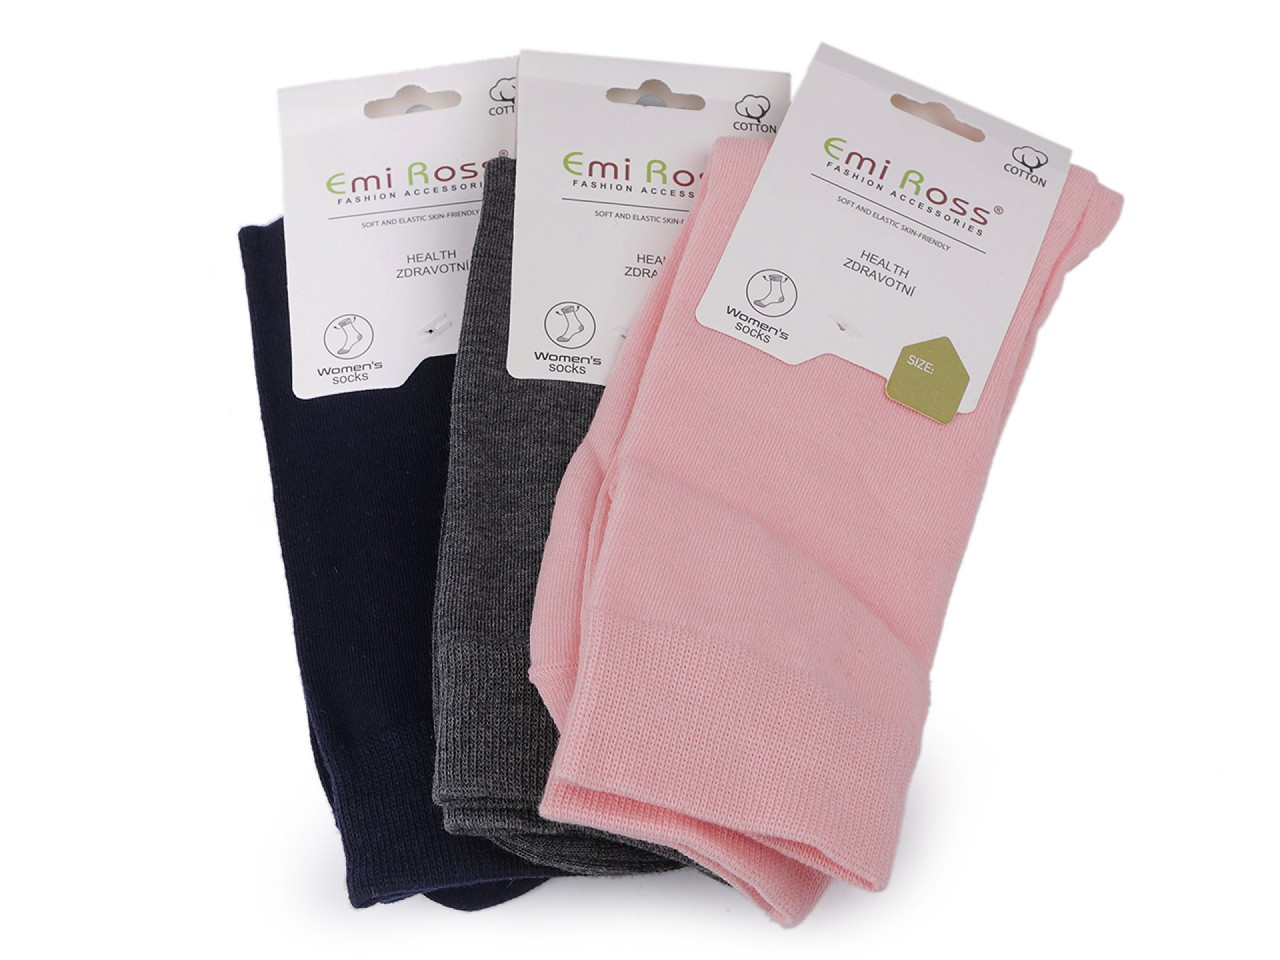 Dámské bavlněné ponožky Emi Ross, barva 22 (39-42) mix